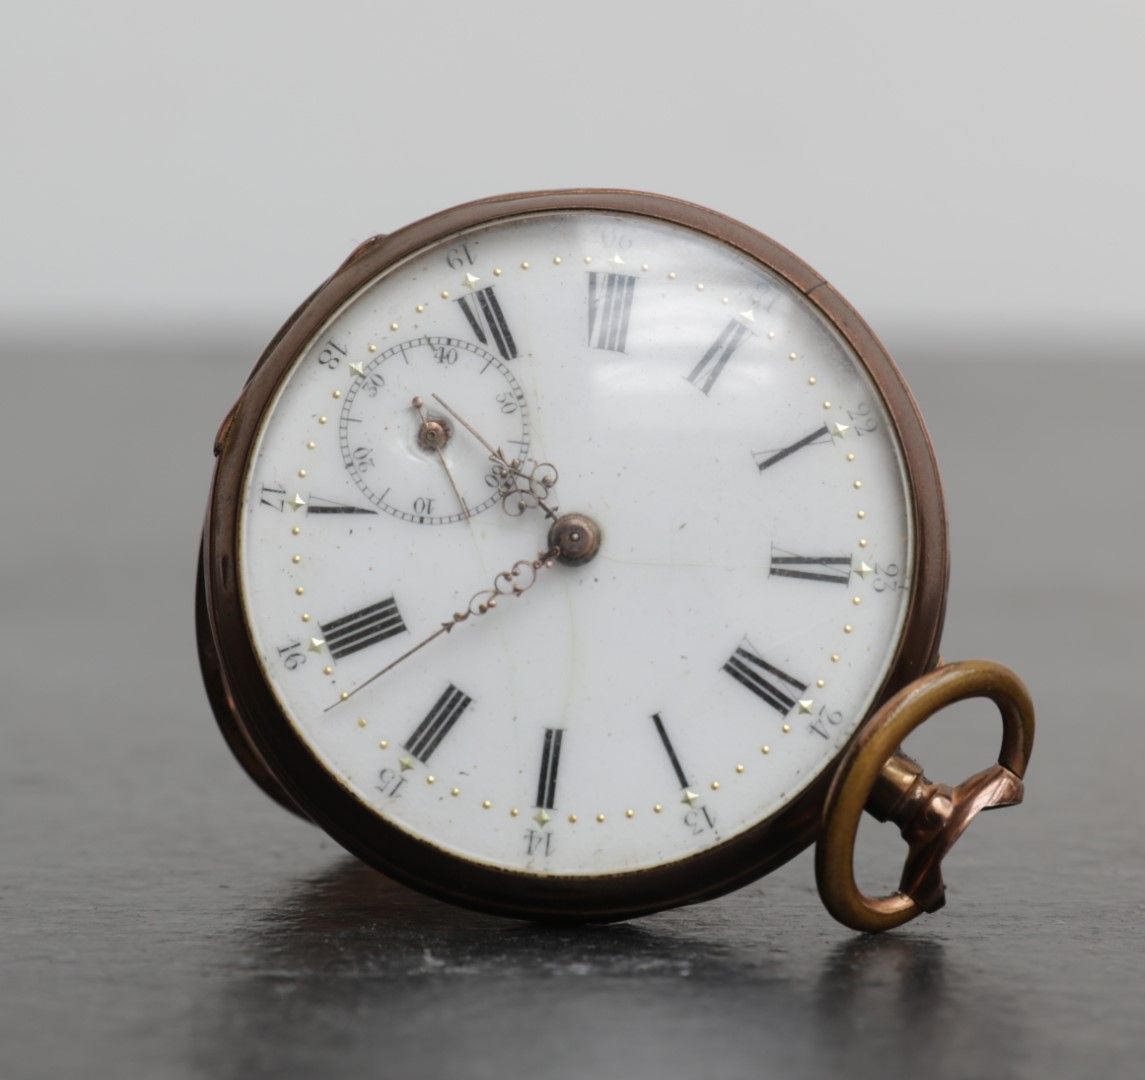 VARIA Reloj de bolsillo
Zakhorloge